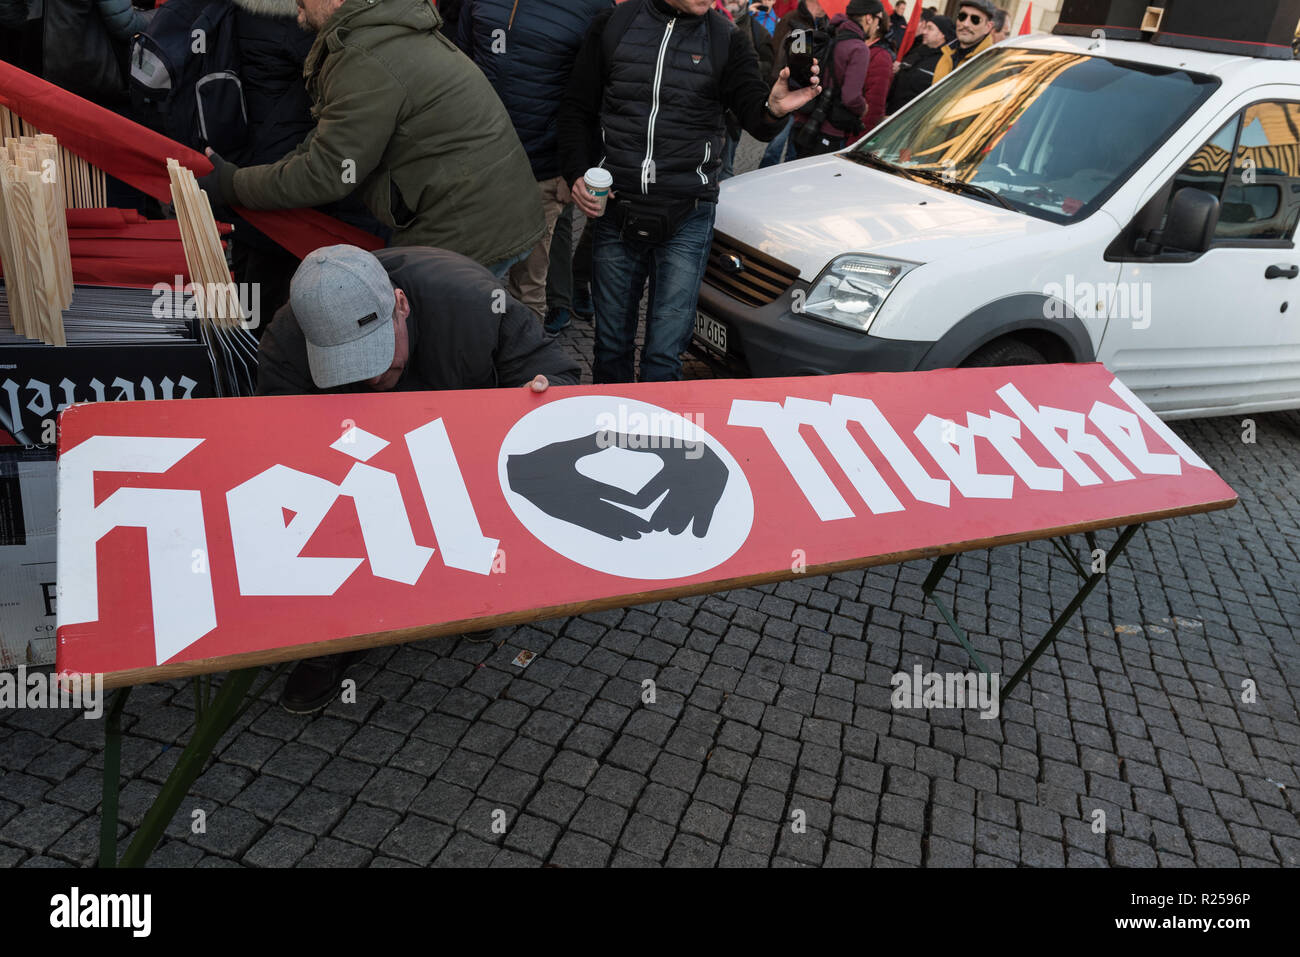 "Awesome Merkel! Fahne während des rechten gesehen - Flügel protestieren. Rechtsextreme Proteste gegen Merkels Besuch in Chemnitz, Deutschland. Der Bundeskanzler besucht die Stadt und für die Bürgerinnen und Bürger Sprachen in einem Bürgerforum nach Proteste und Unruhen im August nach dem gewaltsamen Tod eines 35 Jahre alten Mannes aus Chemnitz brach. Stockfoto